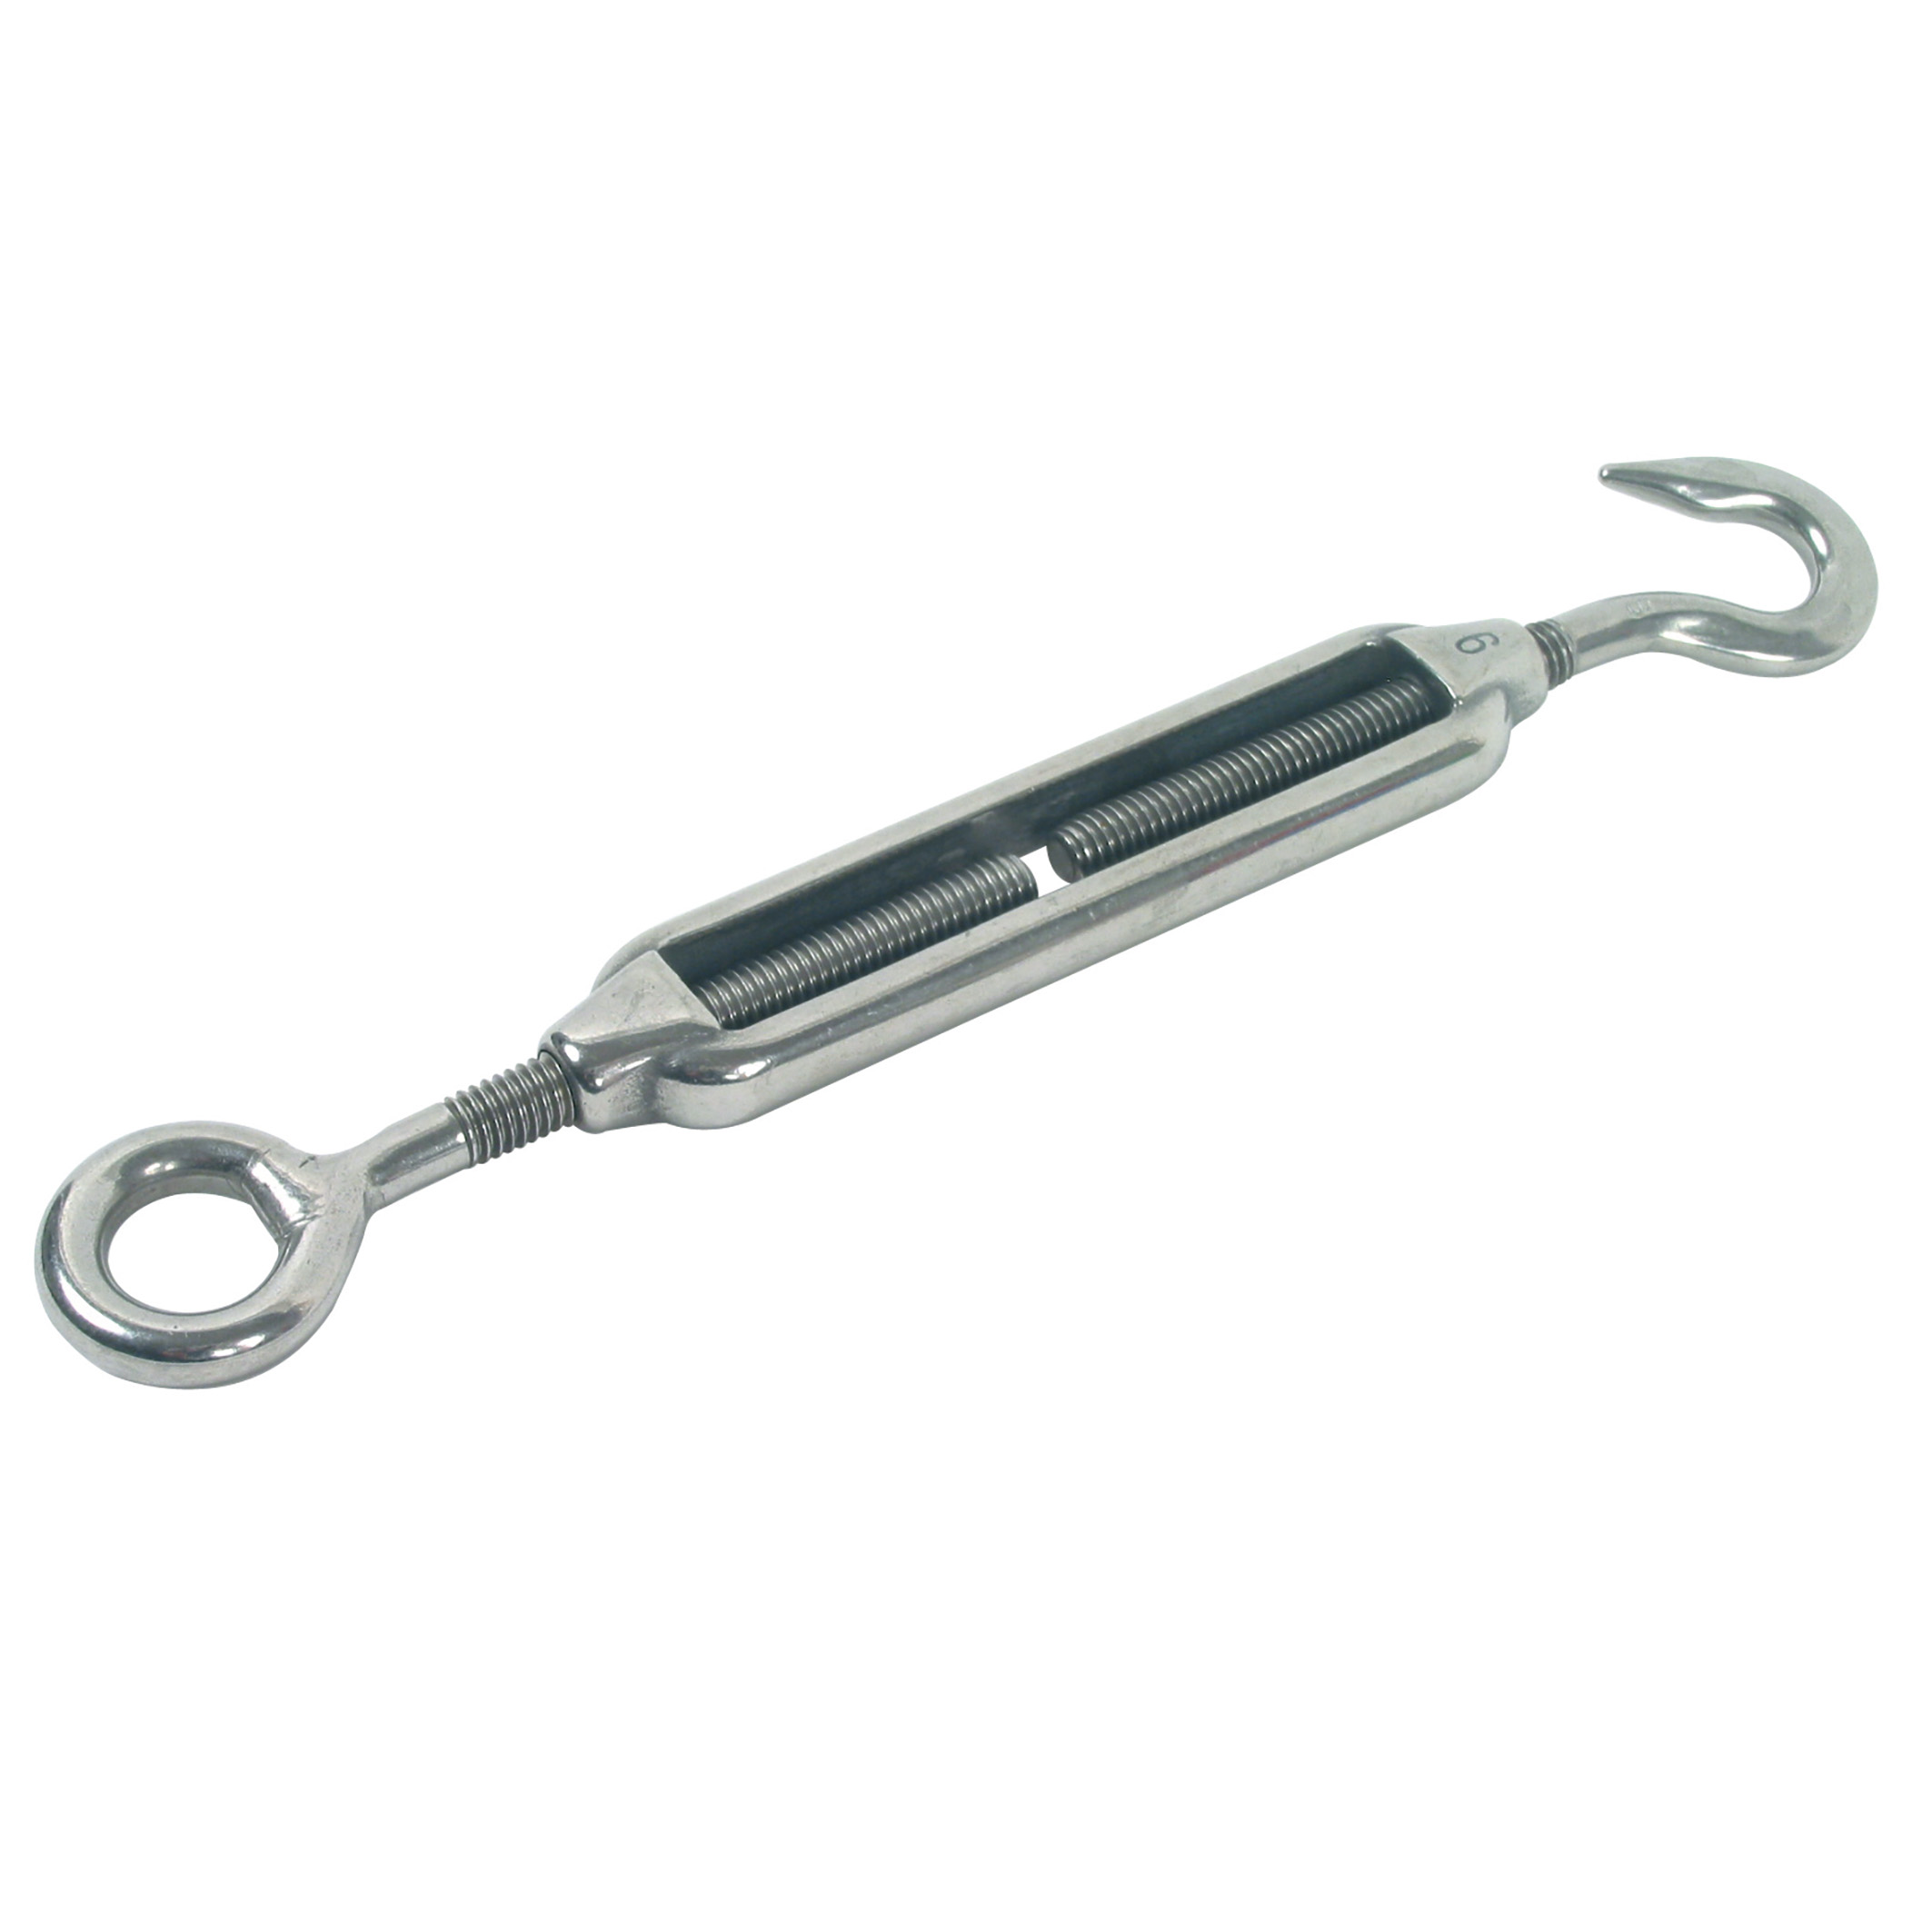 Stainless steel rigging screw (hook/eye) - Stainless steel - With hook/eye - 